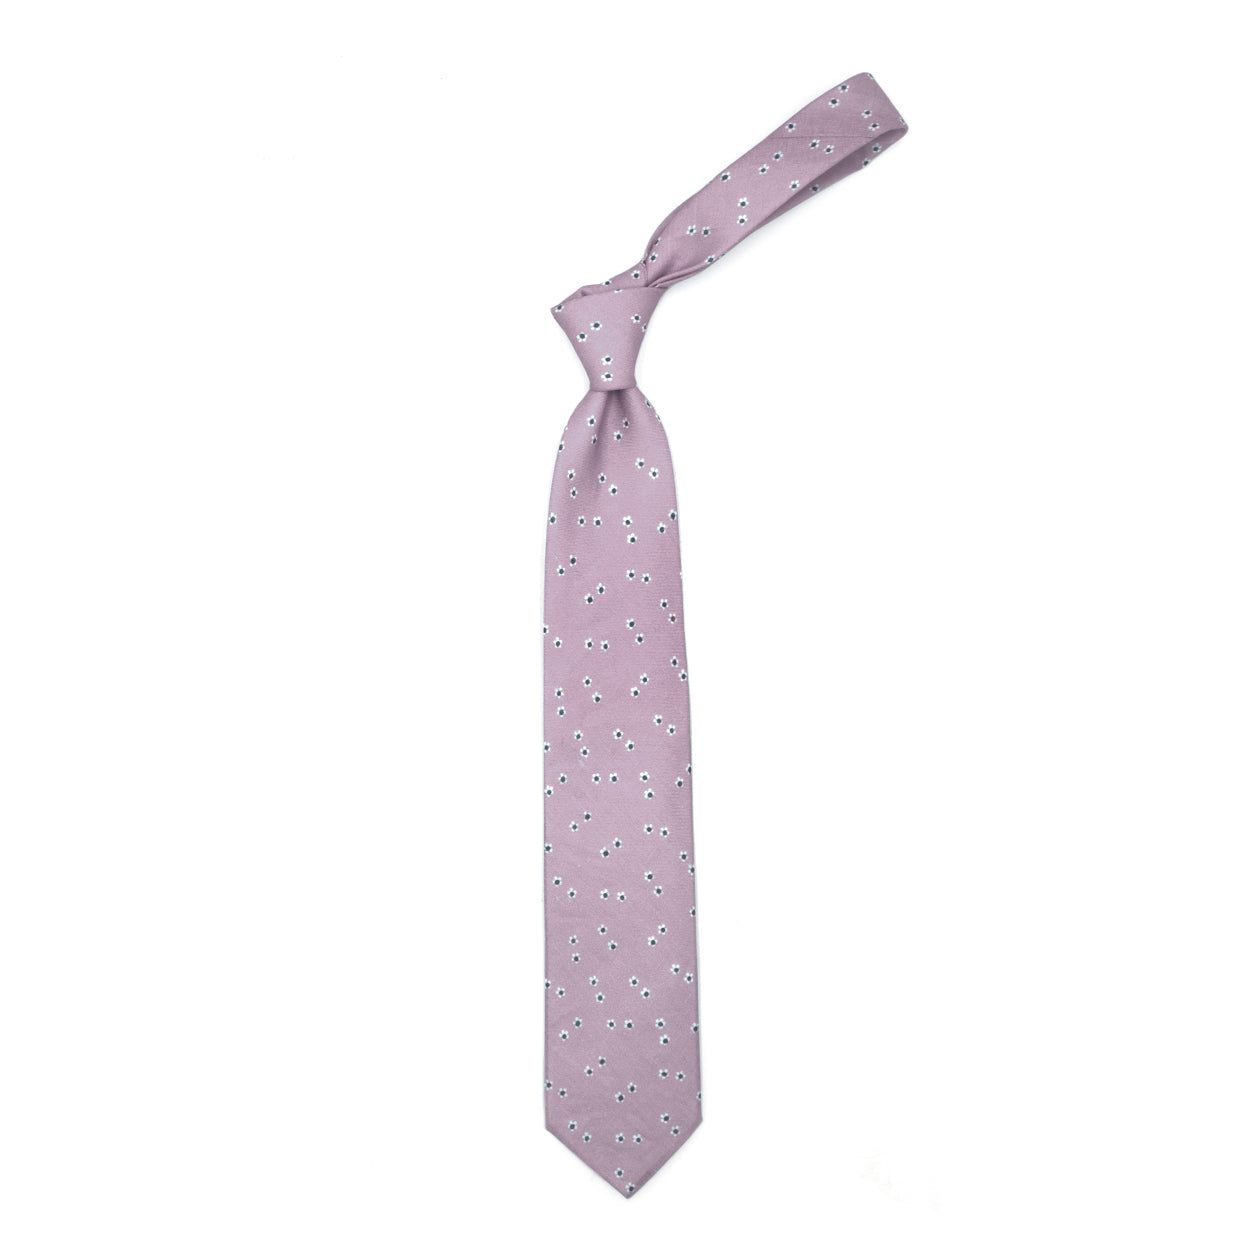 Cravatta rosa con fiorellini bianchi e blu